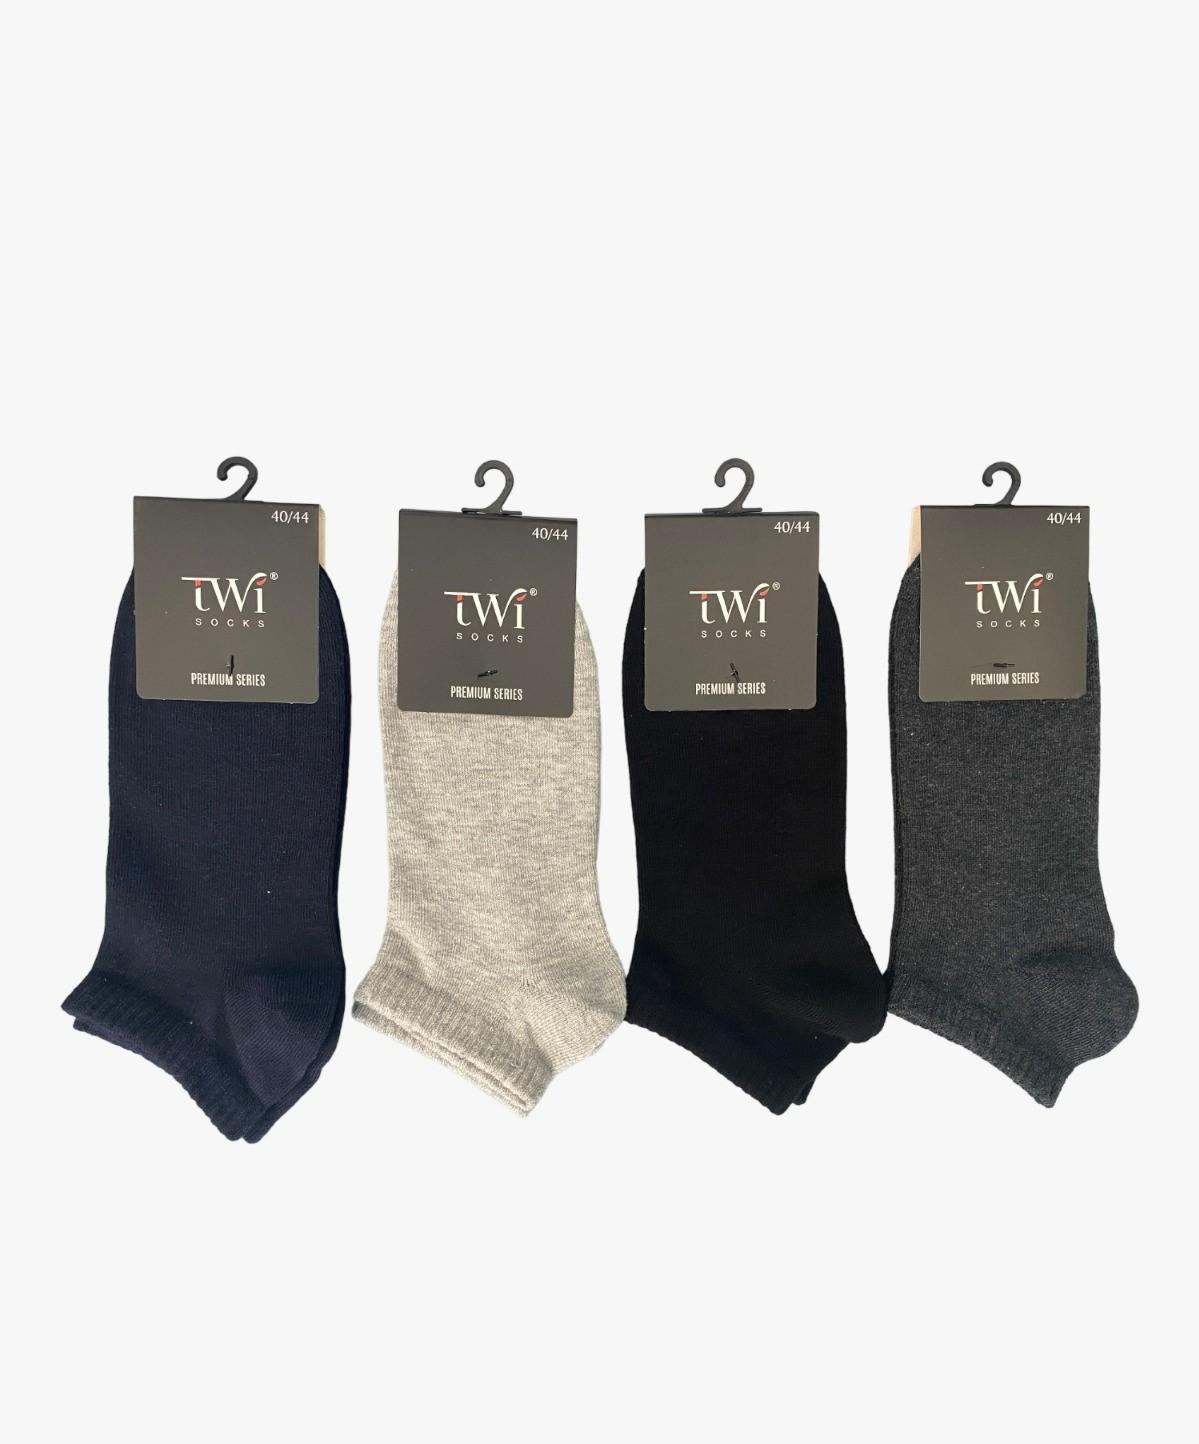 TWISOCKS Muške čarape 2100 4/1